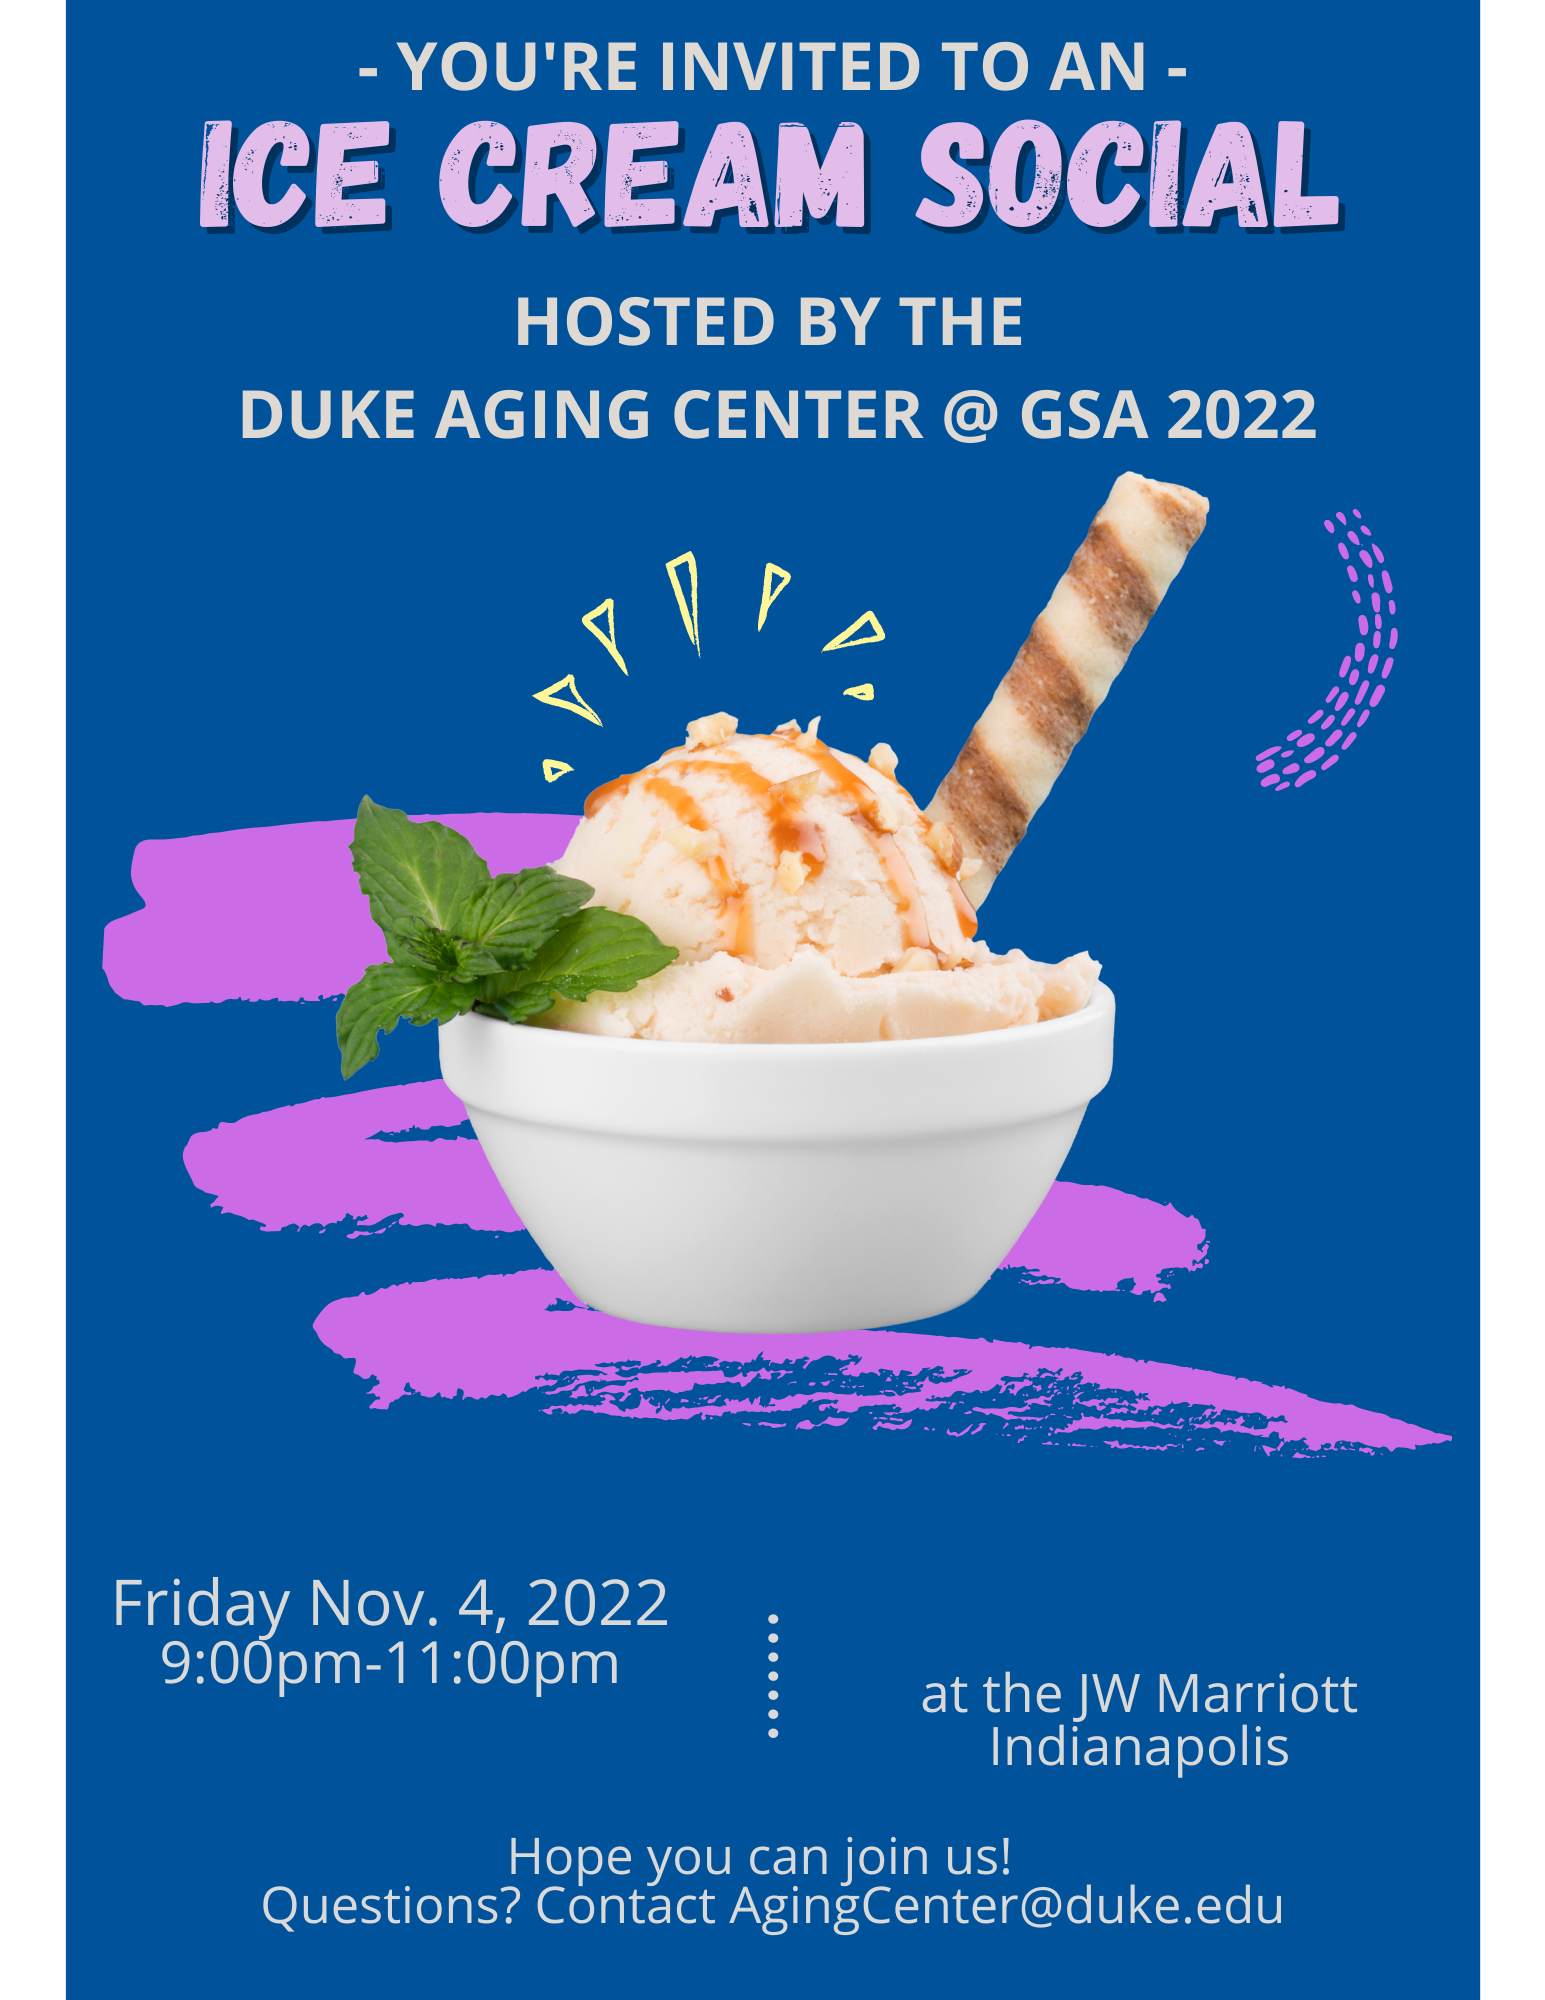 Duke Ice Cream Social flyer